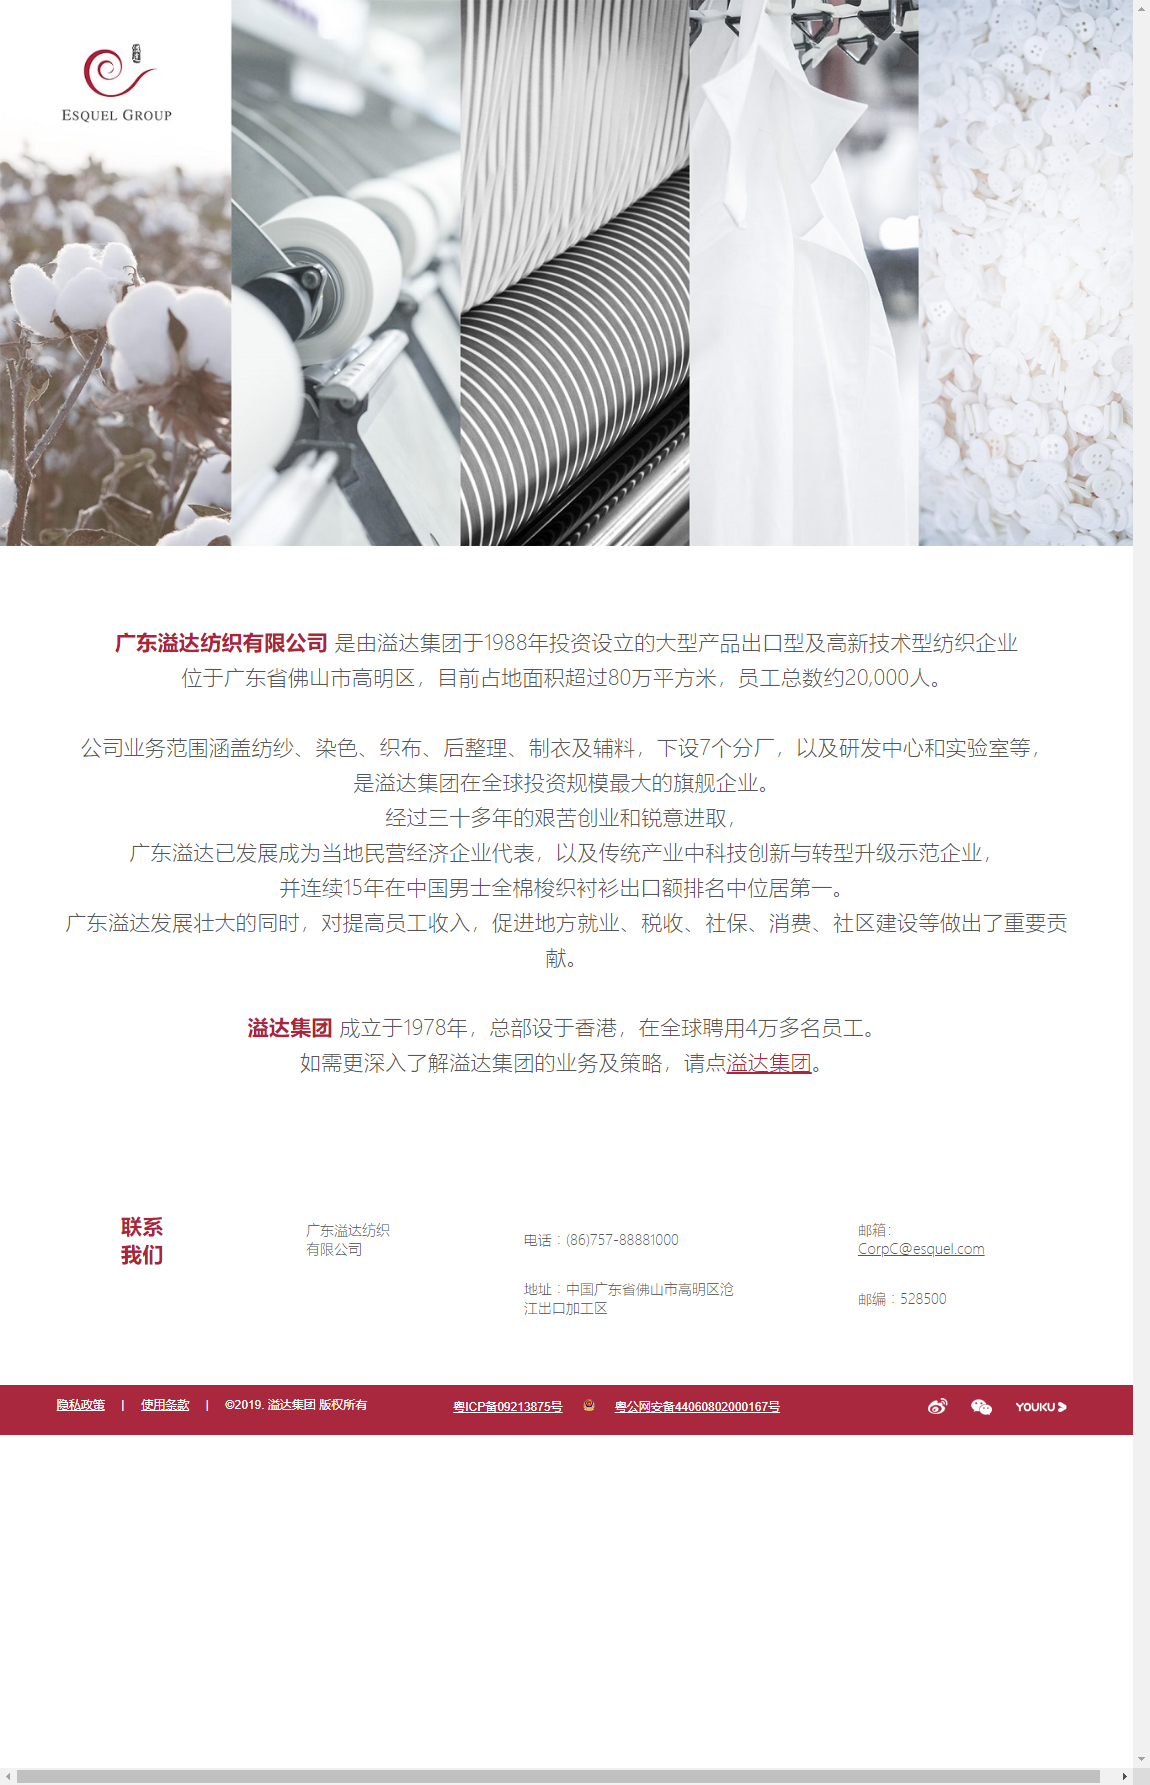 广东溢达纺织有限公司网站案例